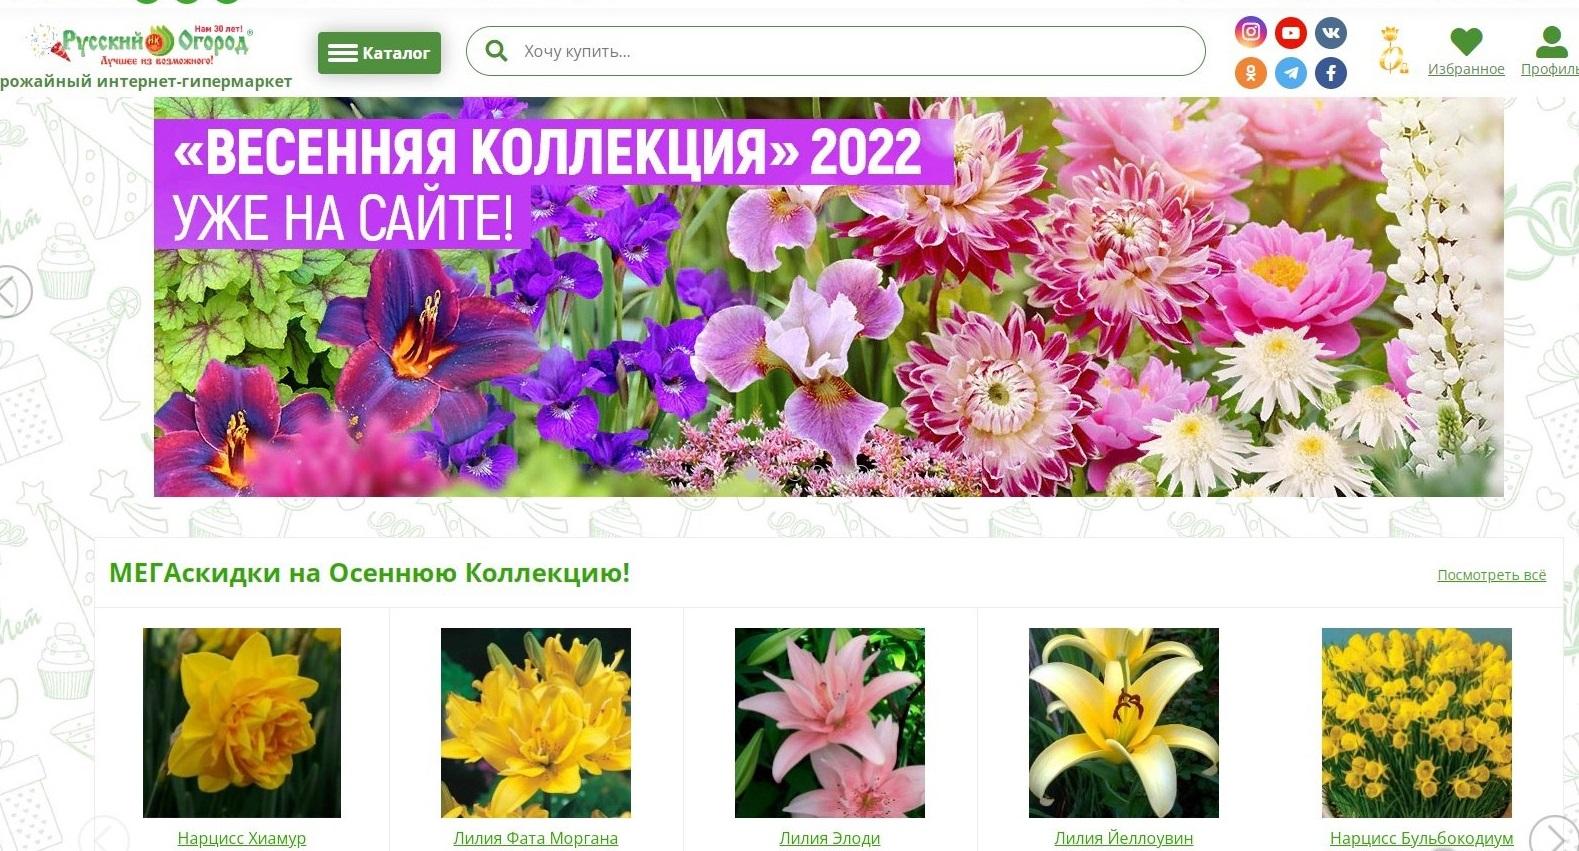 Поиск интернет магазин саженцев каталог 2022 какие лампы купить для выращивания конопли